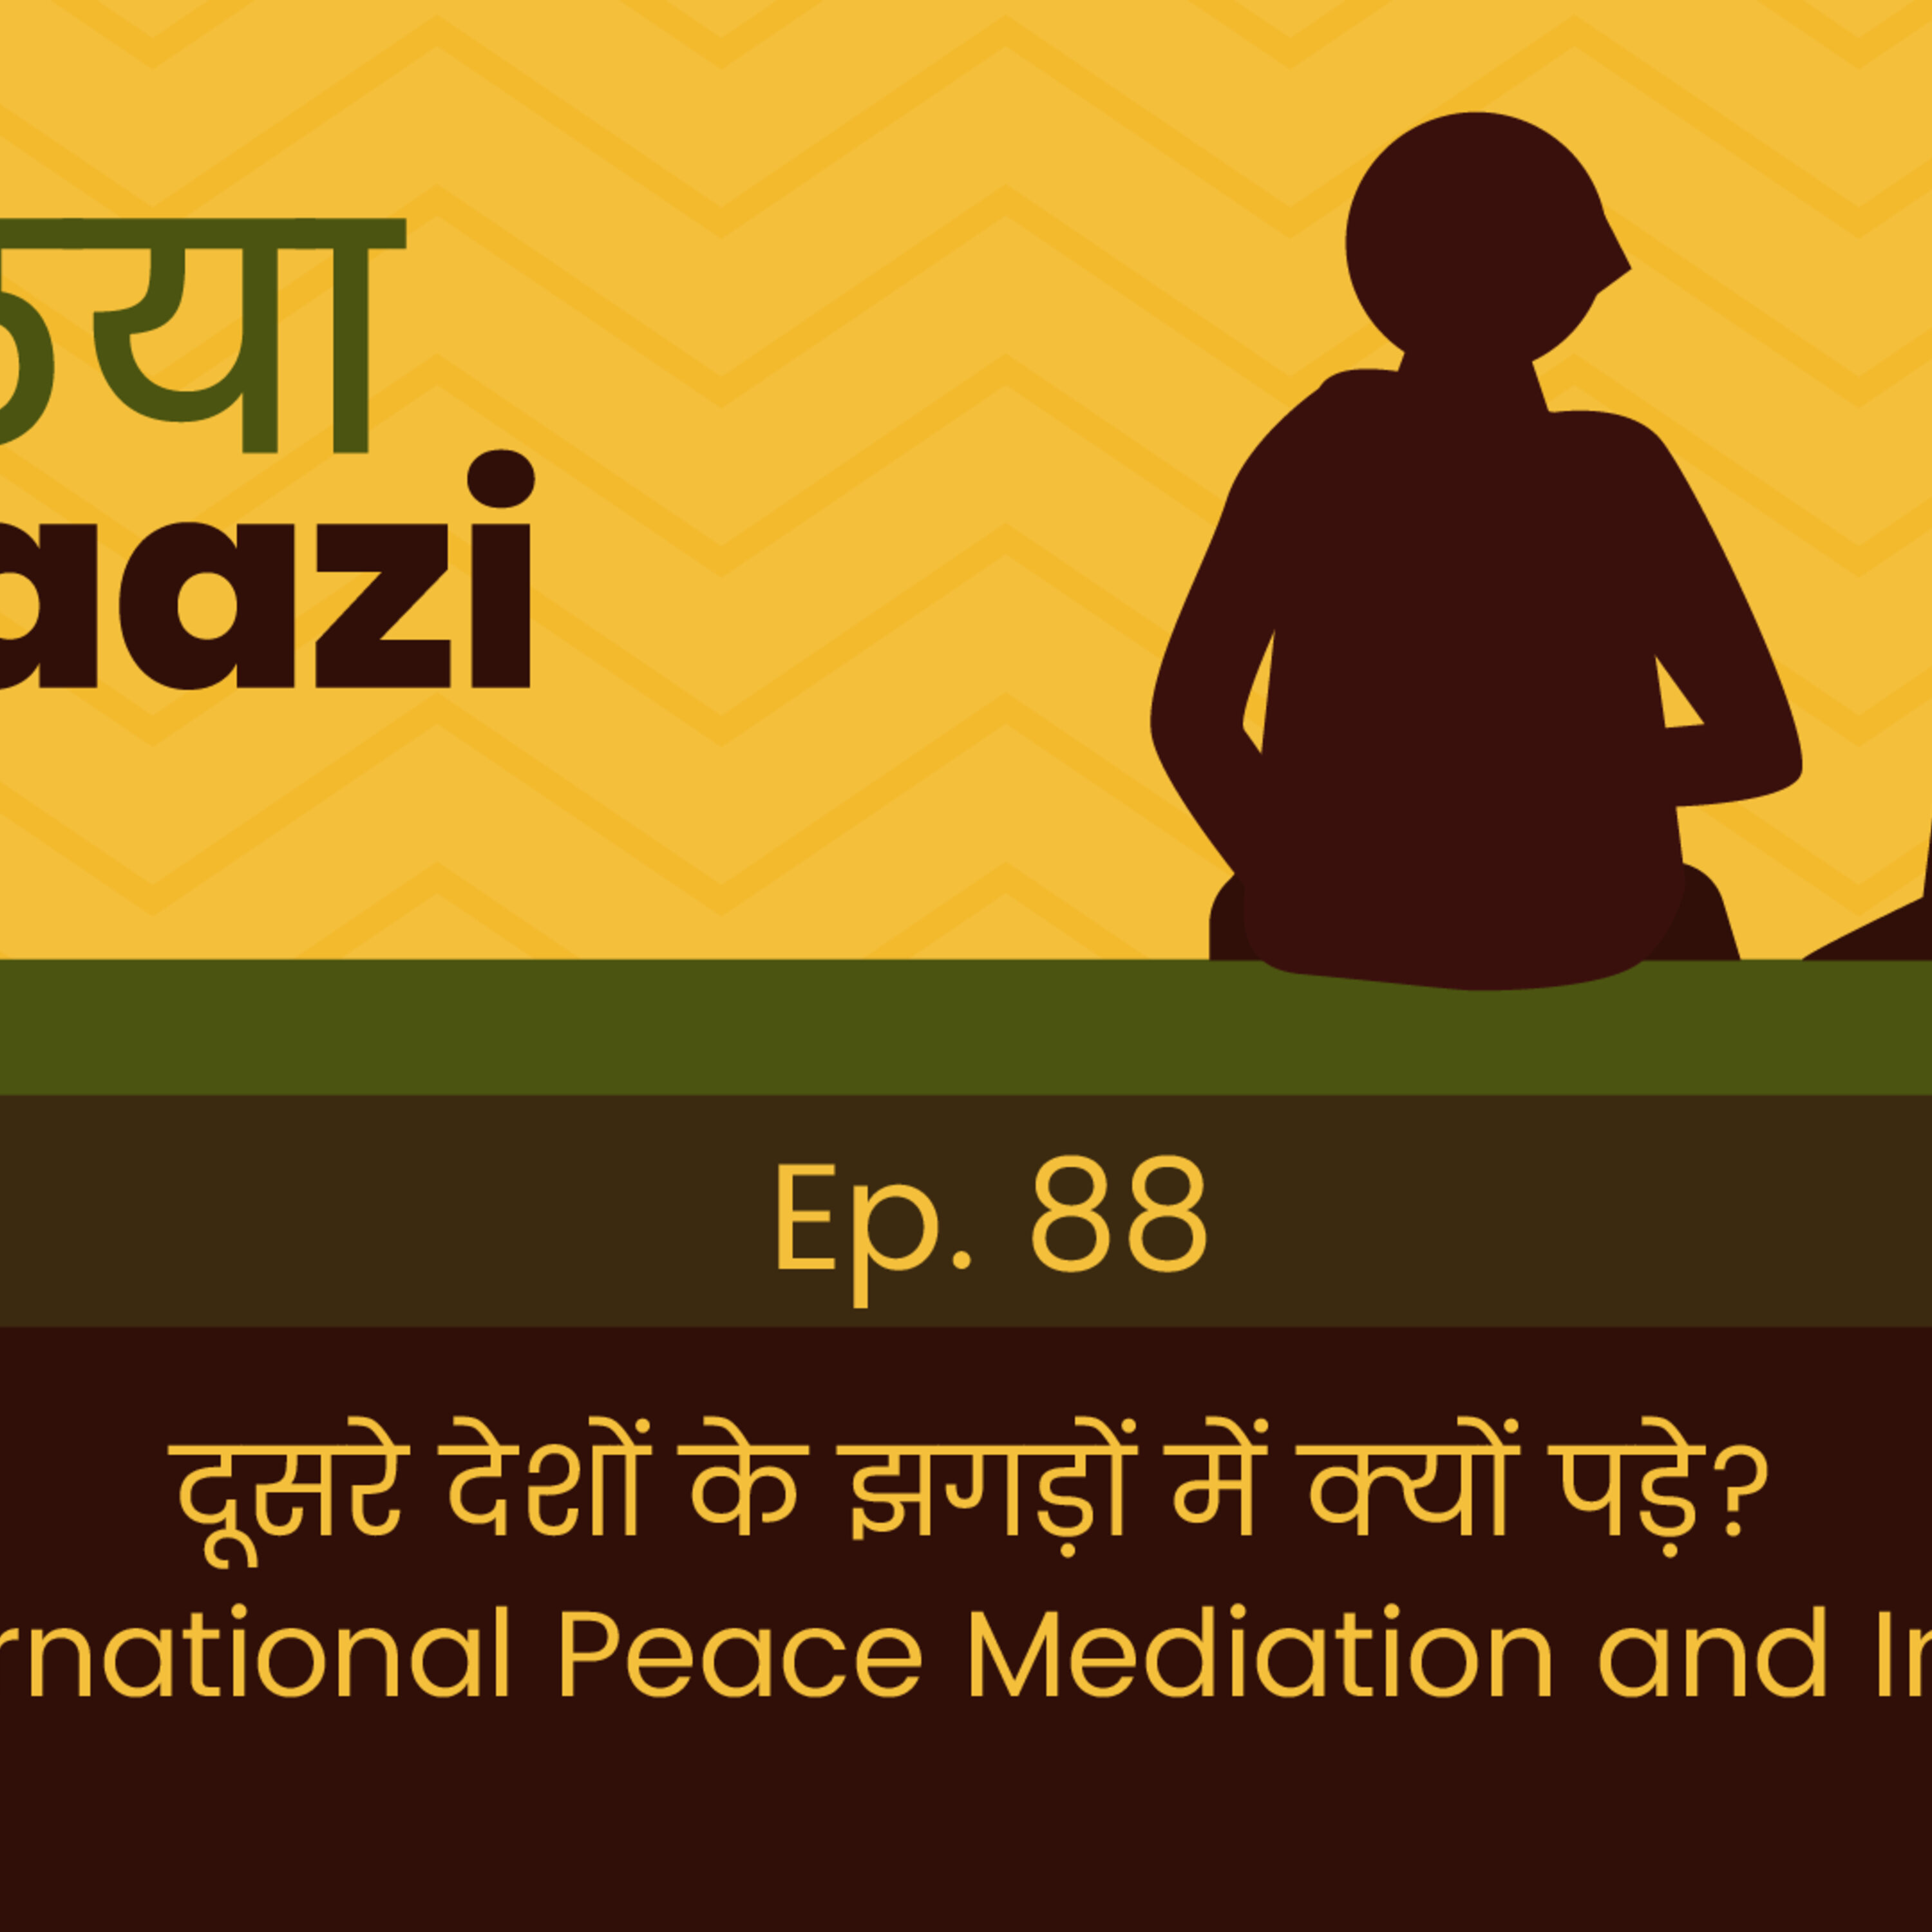 दूसरे देशों के झगड़ों में क्यों पड़े? International Peace Mediation and India.